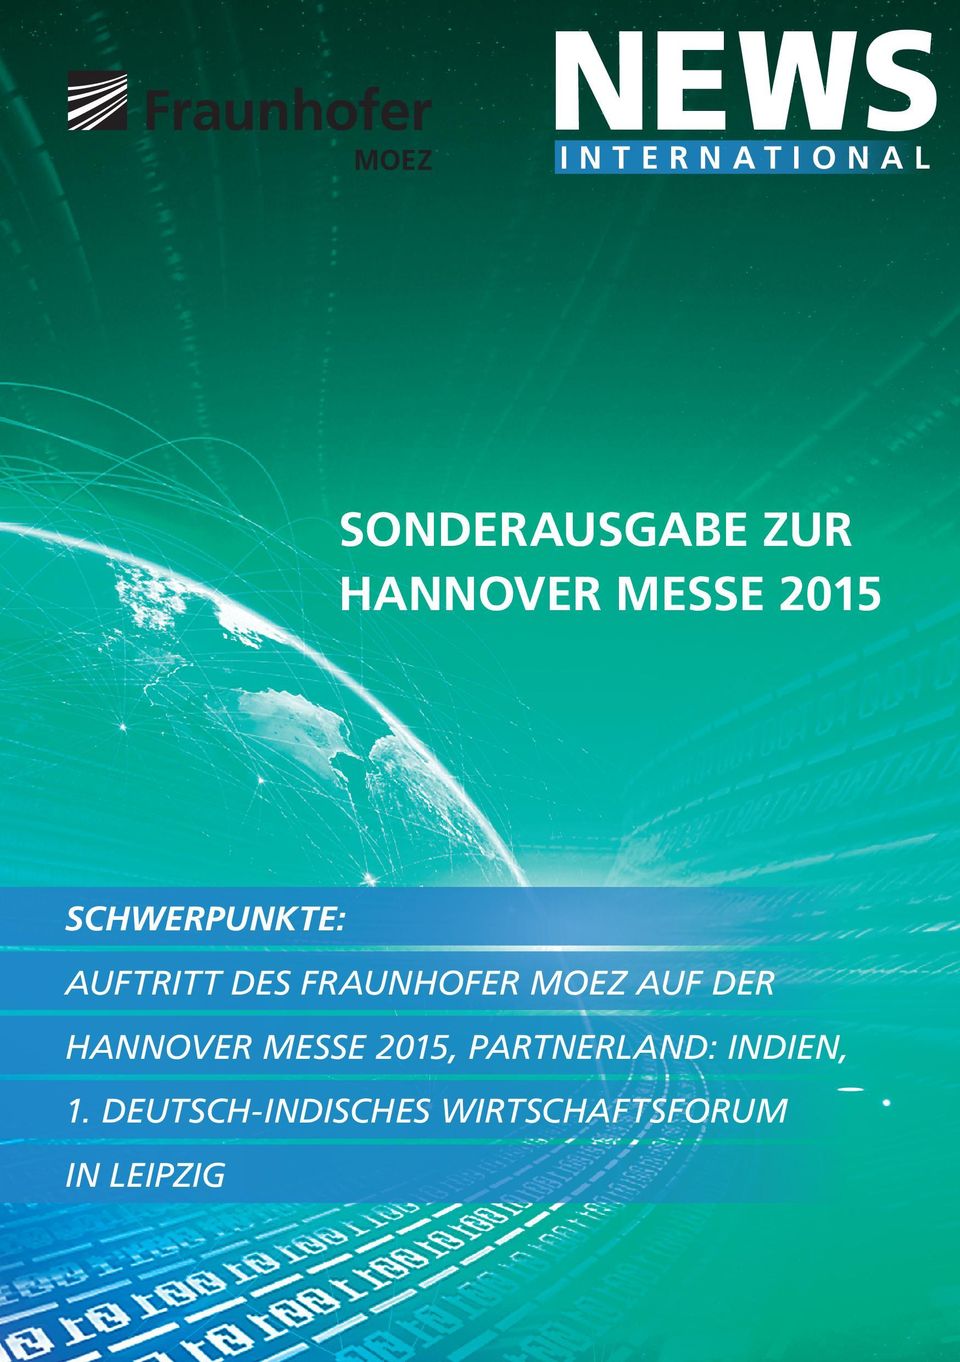 auf der Hannover messe 2015, partnerland: